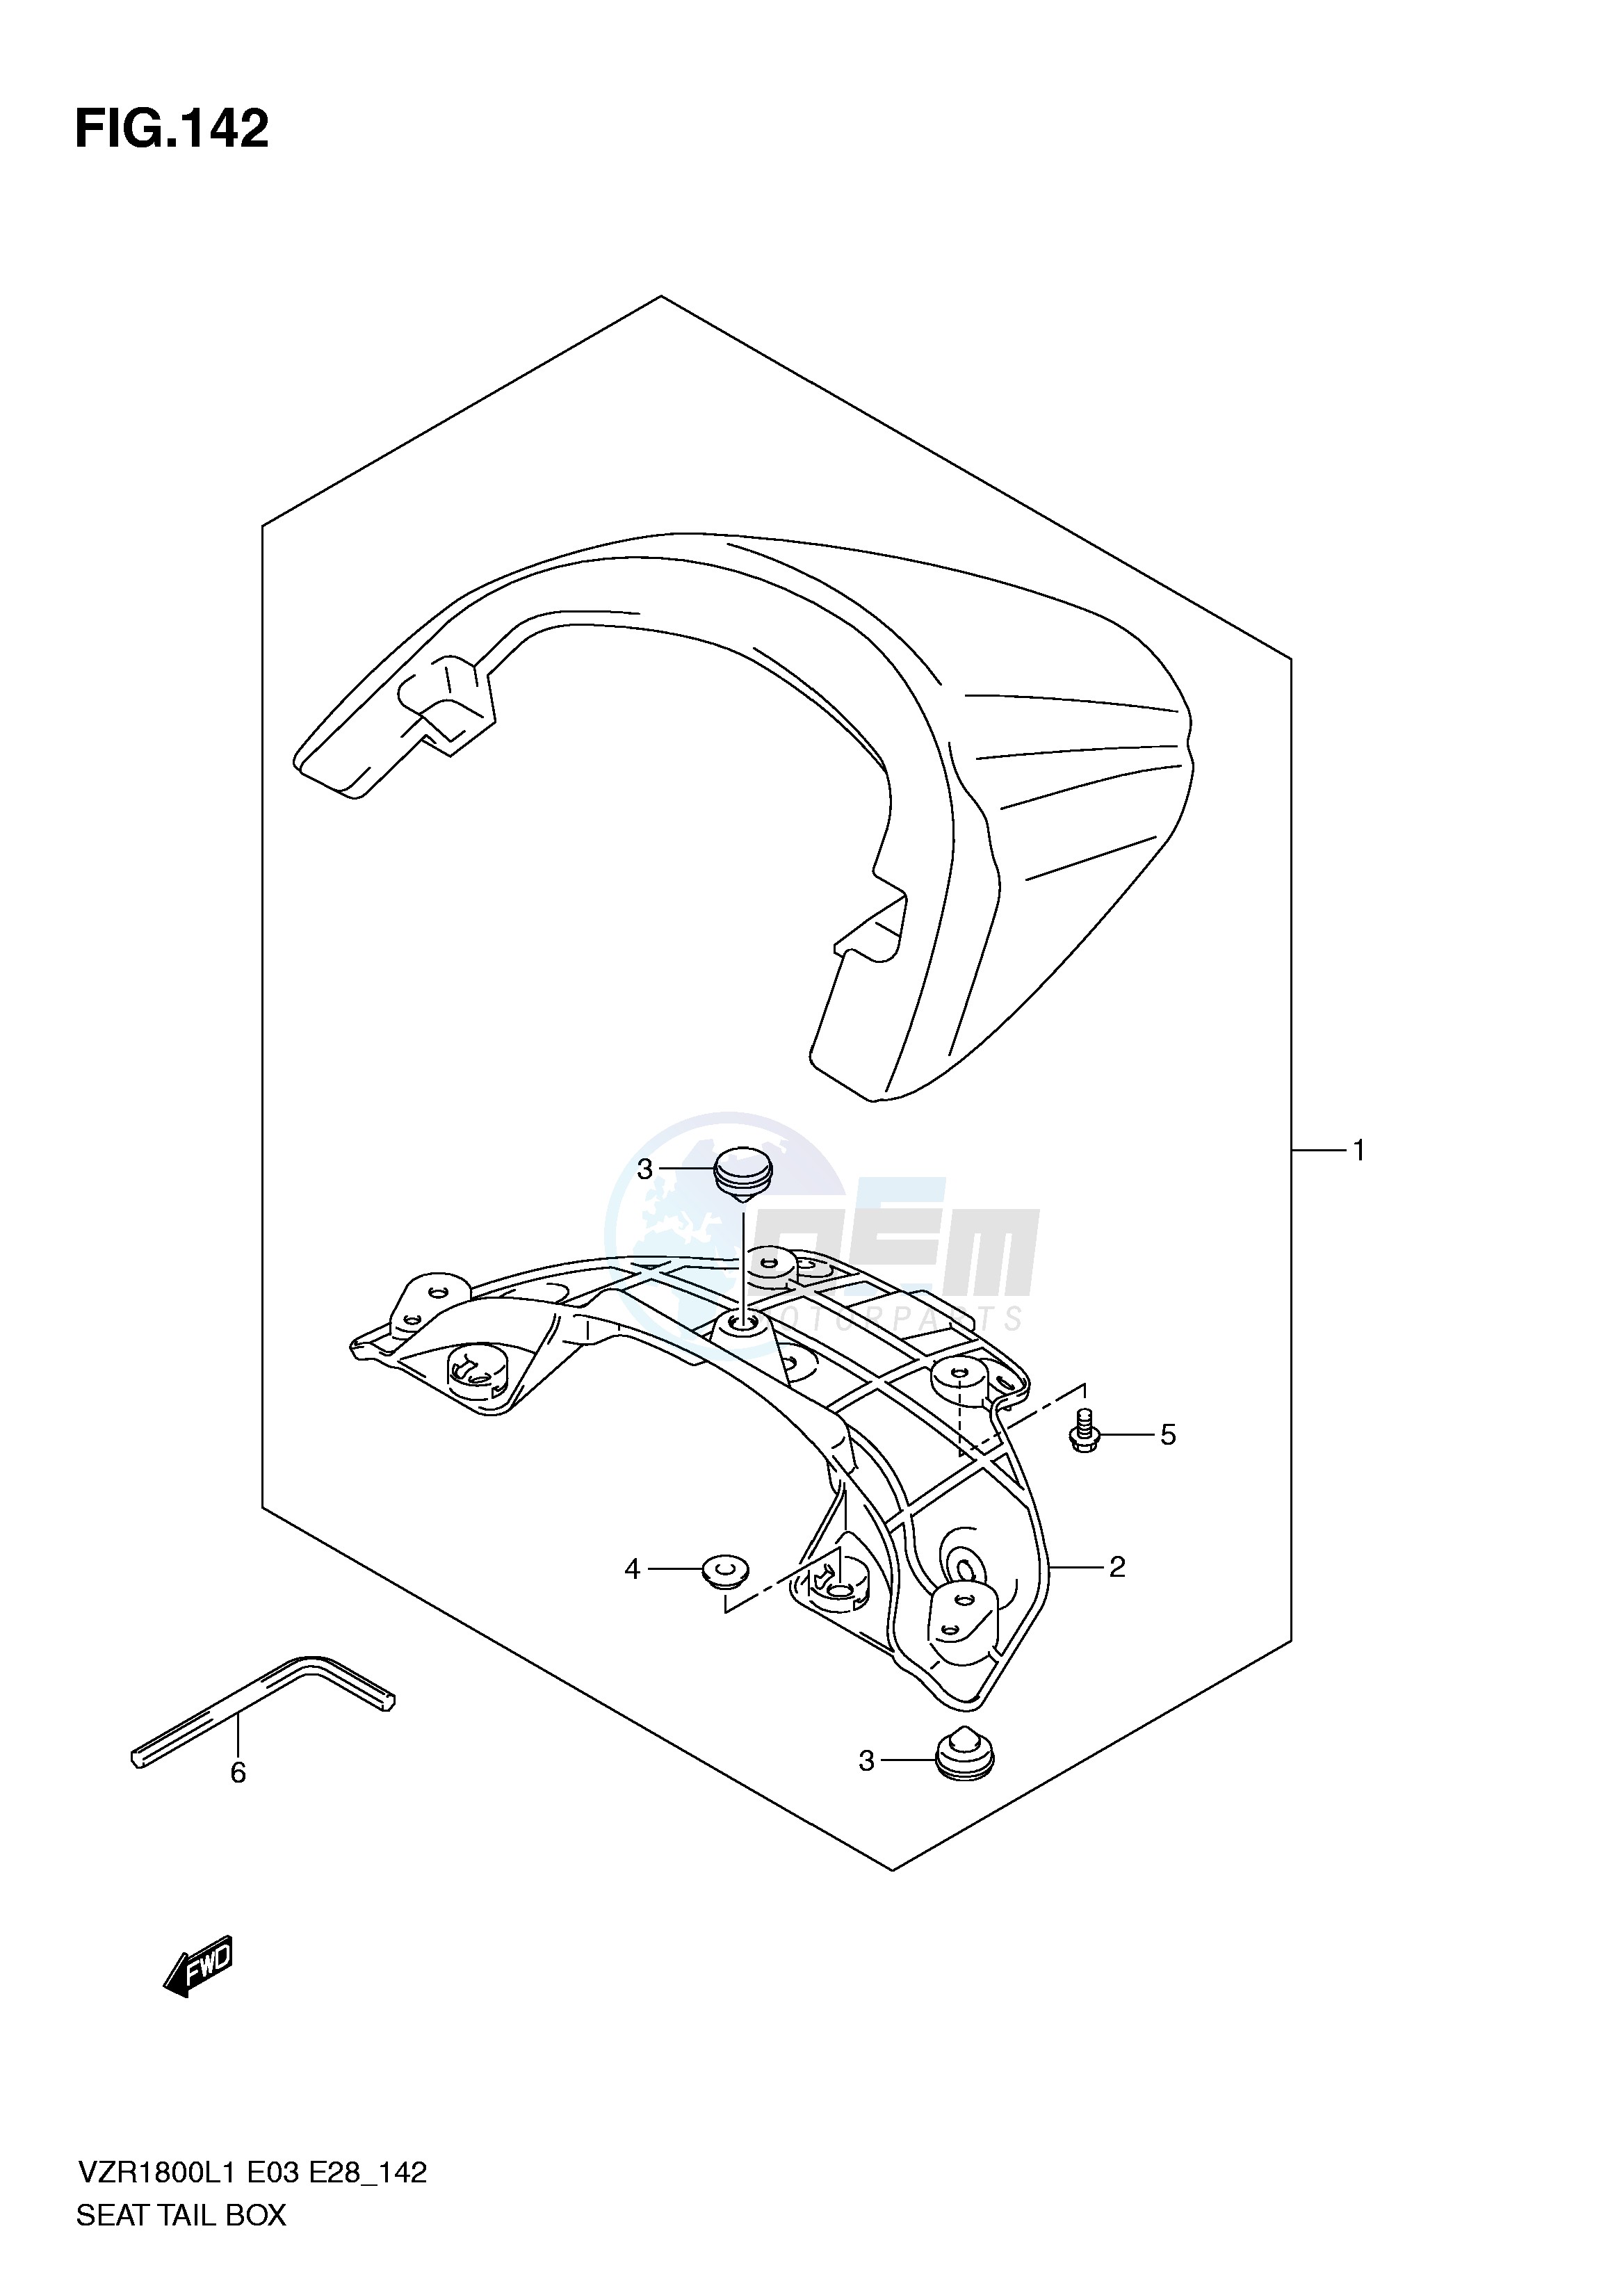 SEAT TAIL BOX (VZR1800ZL1 E3) blueprint